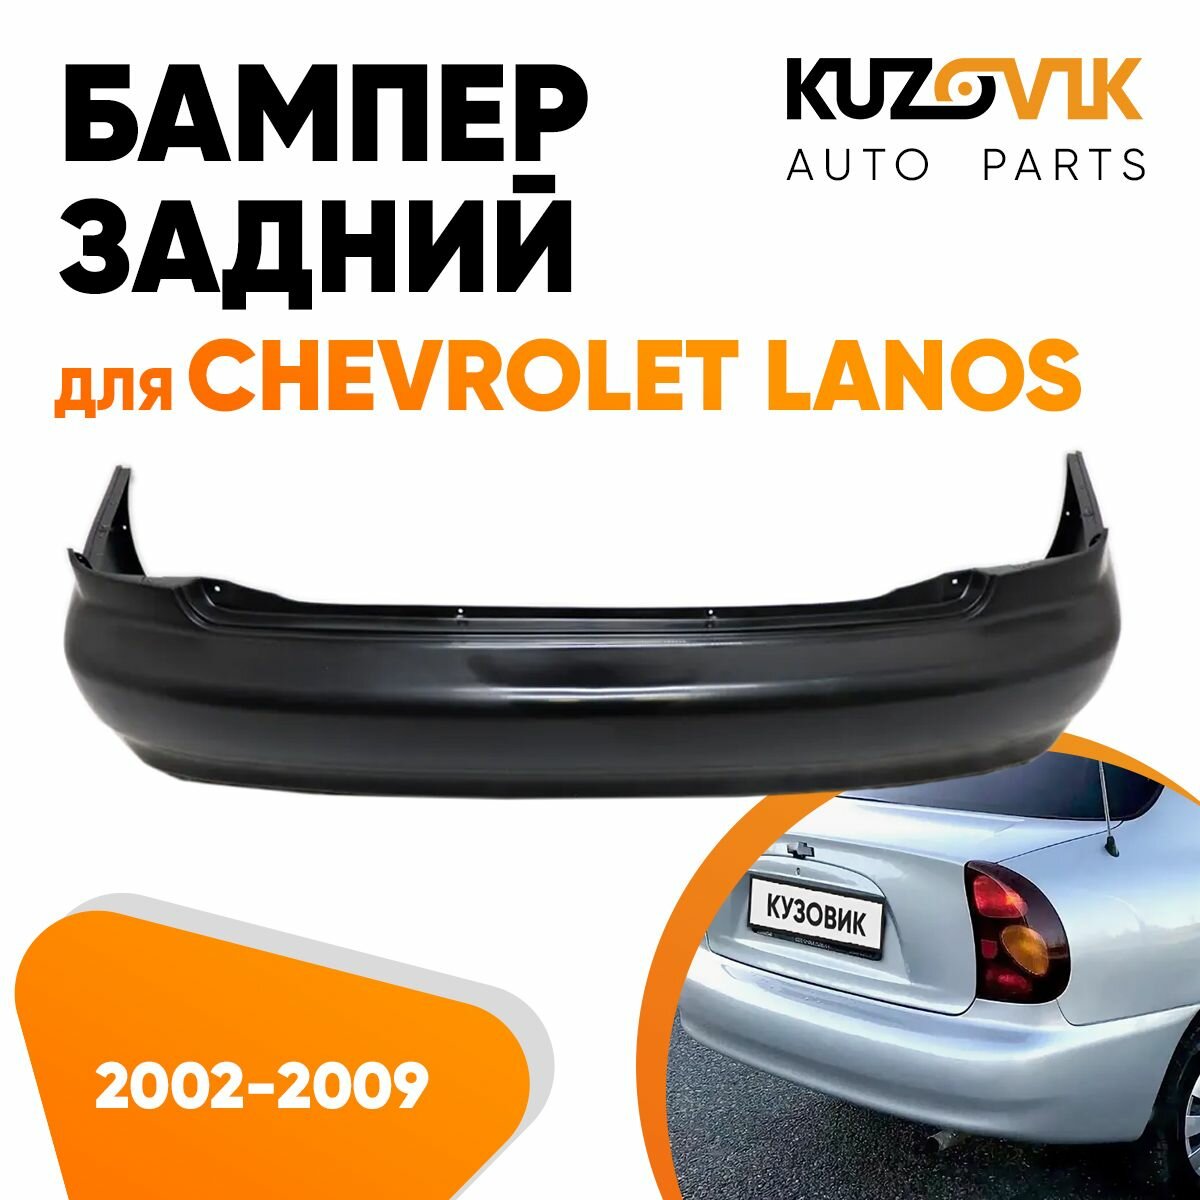 Бампер задний Chevrolet Lanos (2002-2009)